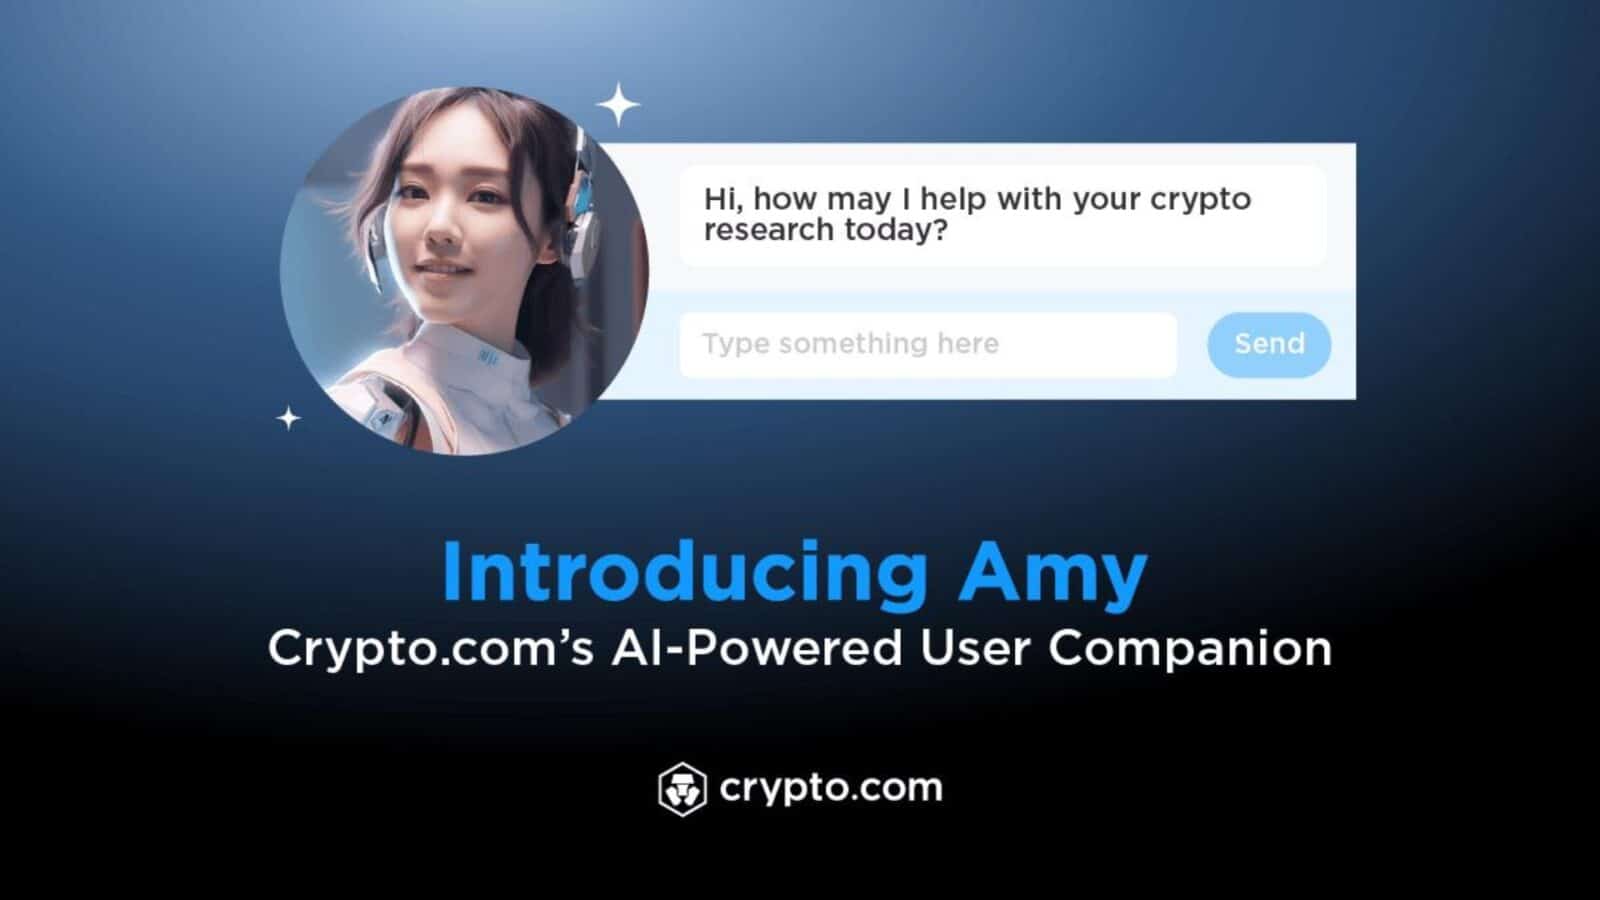 Meet Amy, Crypto.com's New AI User Assistant